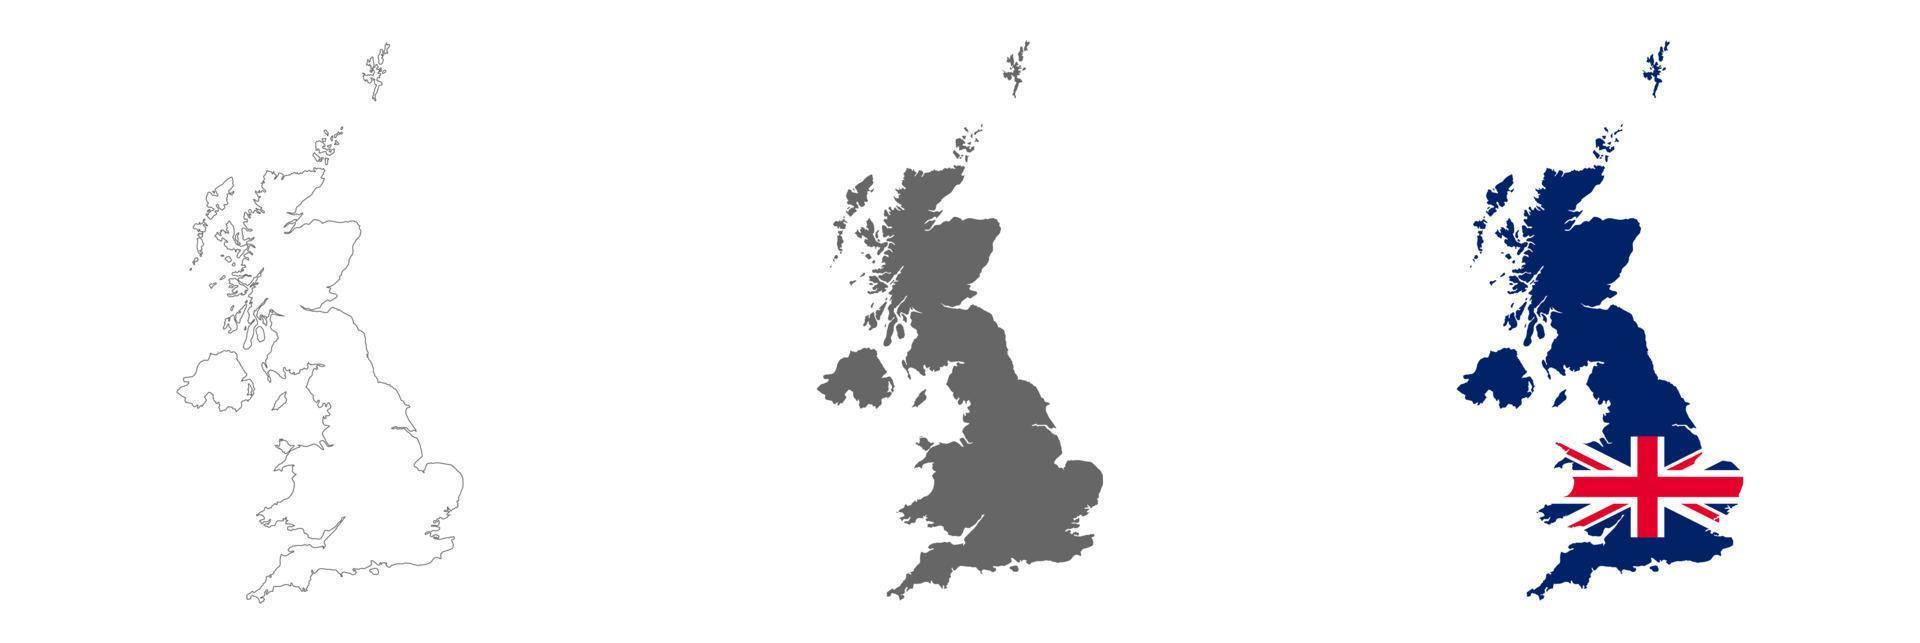 Mapa del Reino Unido muy detallado con bordes aislados en segundo plano. vector